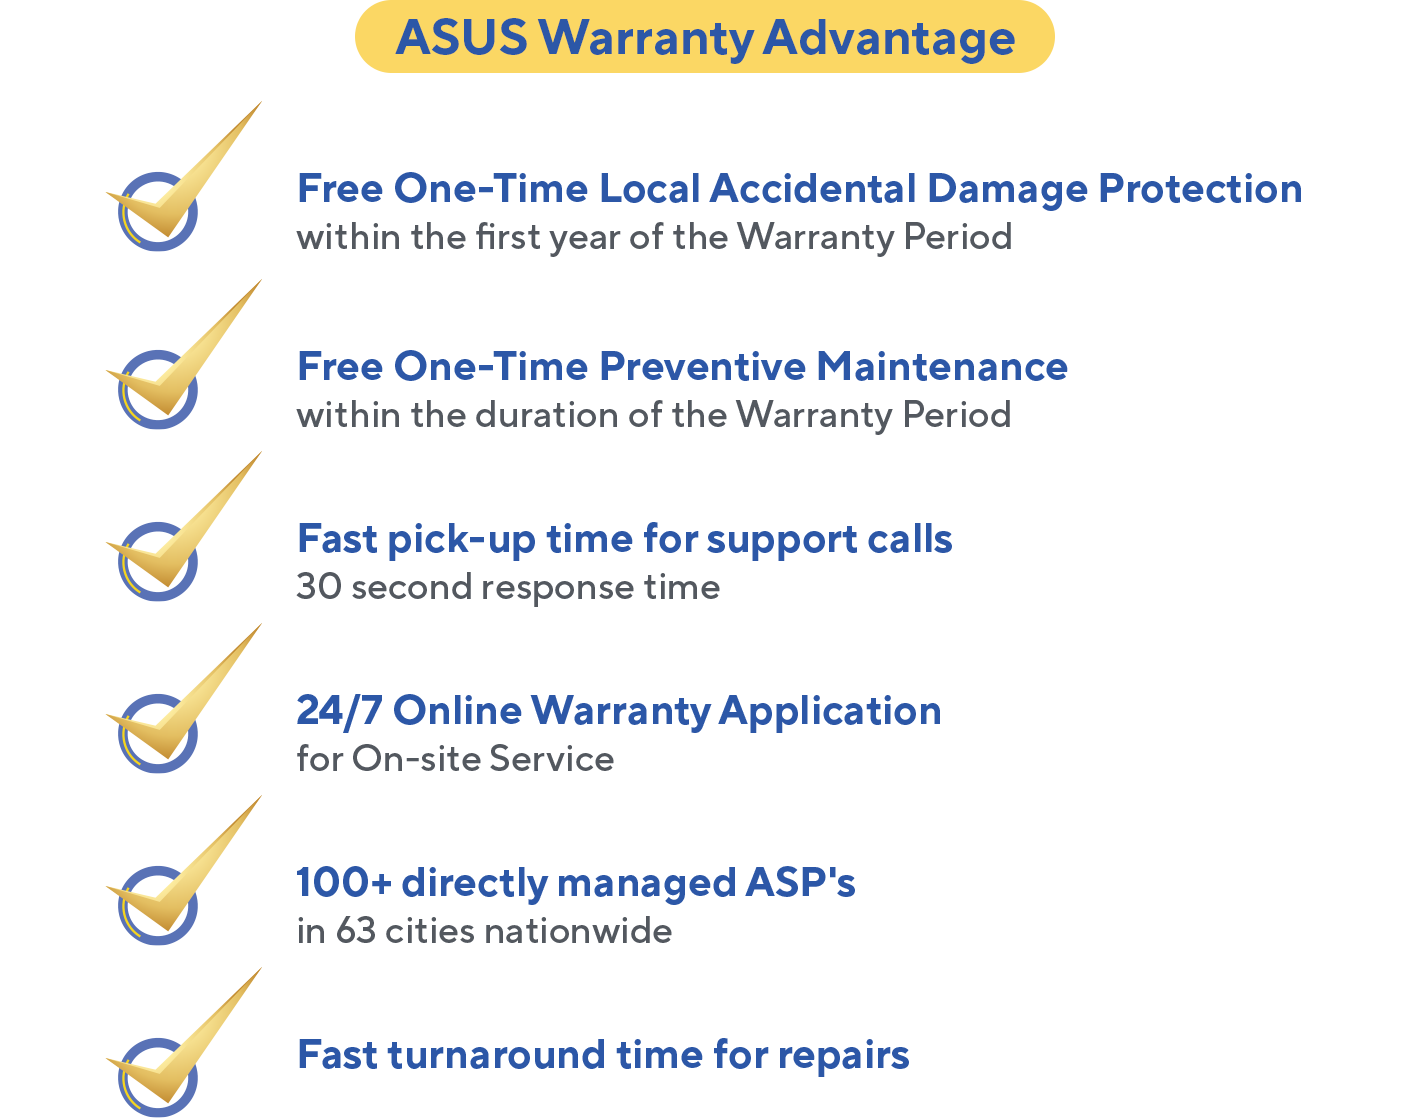 ASUS Warranty Advantage